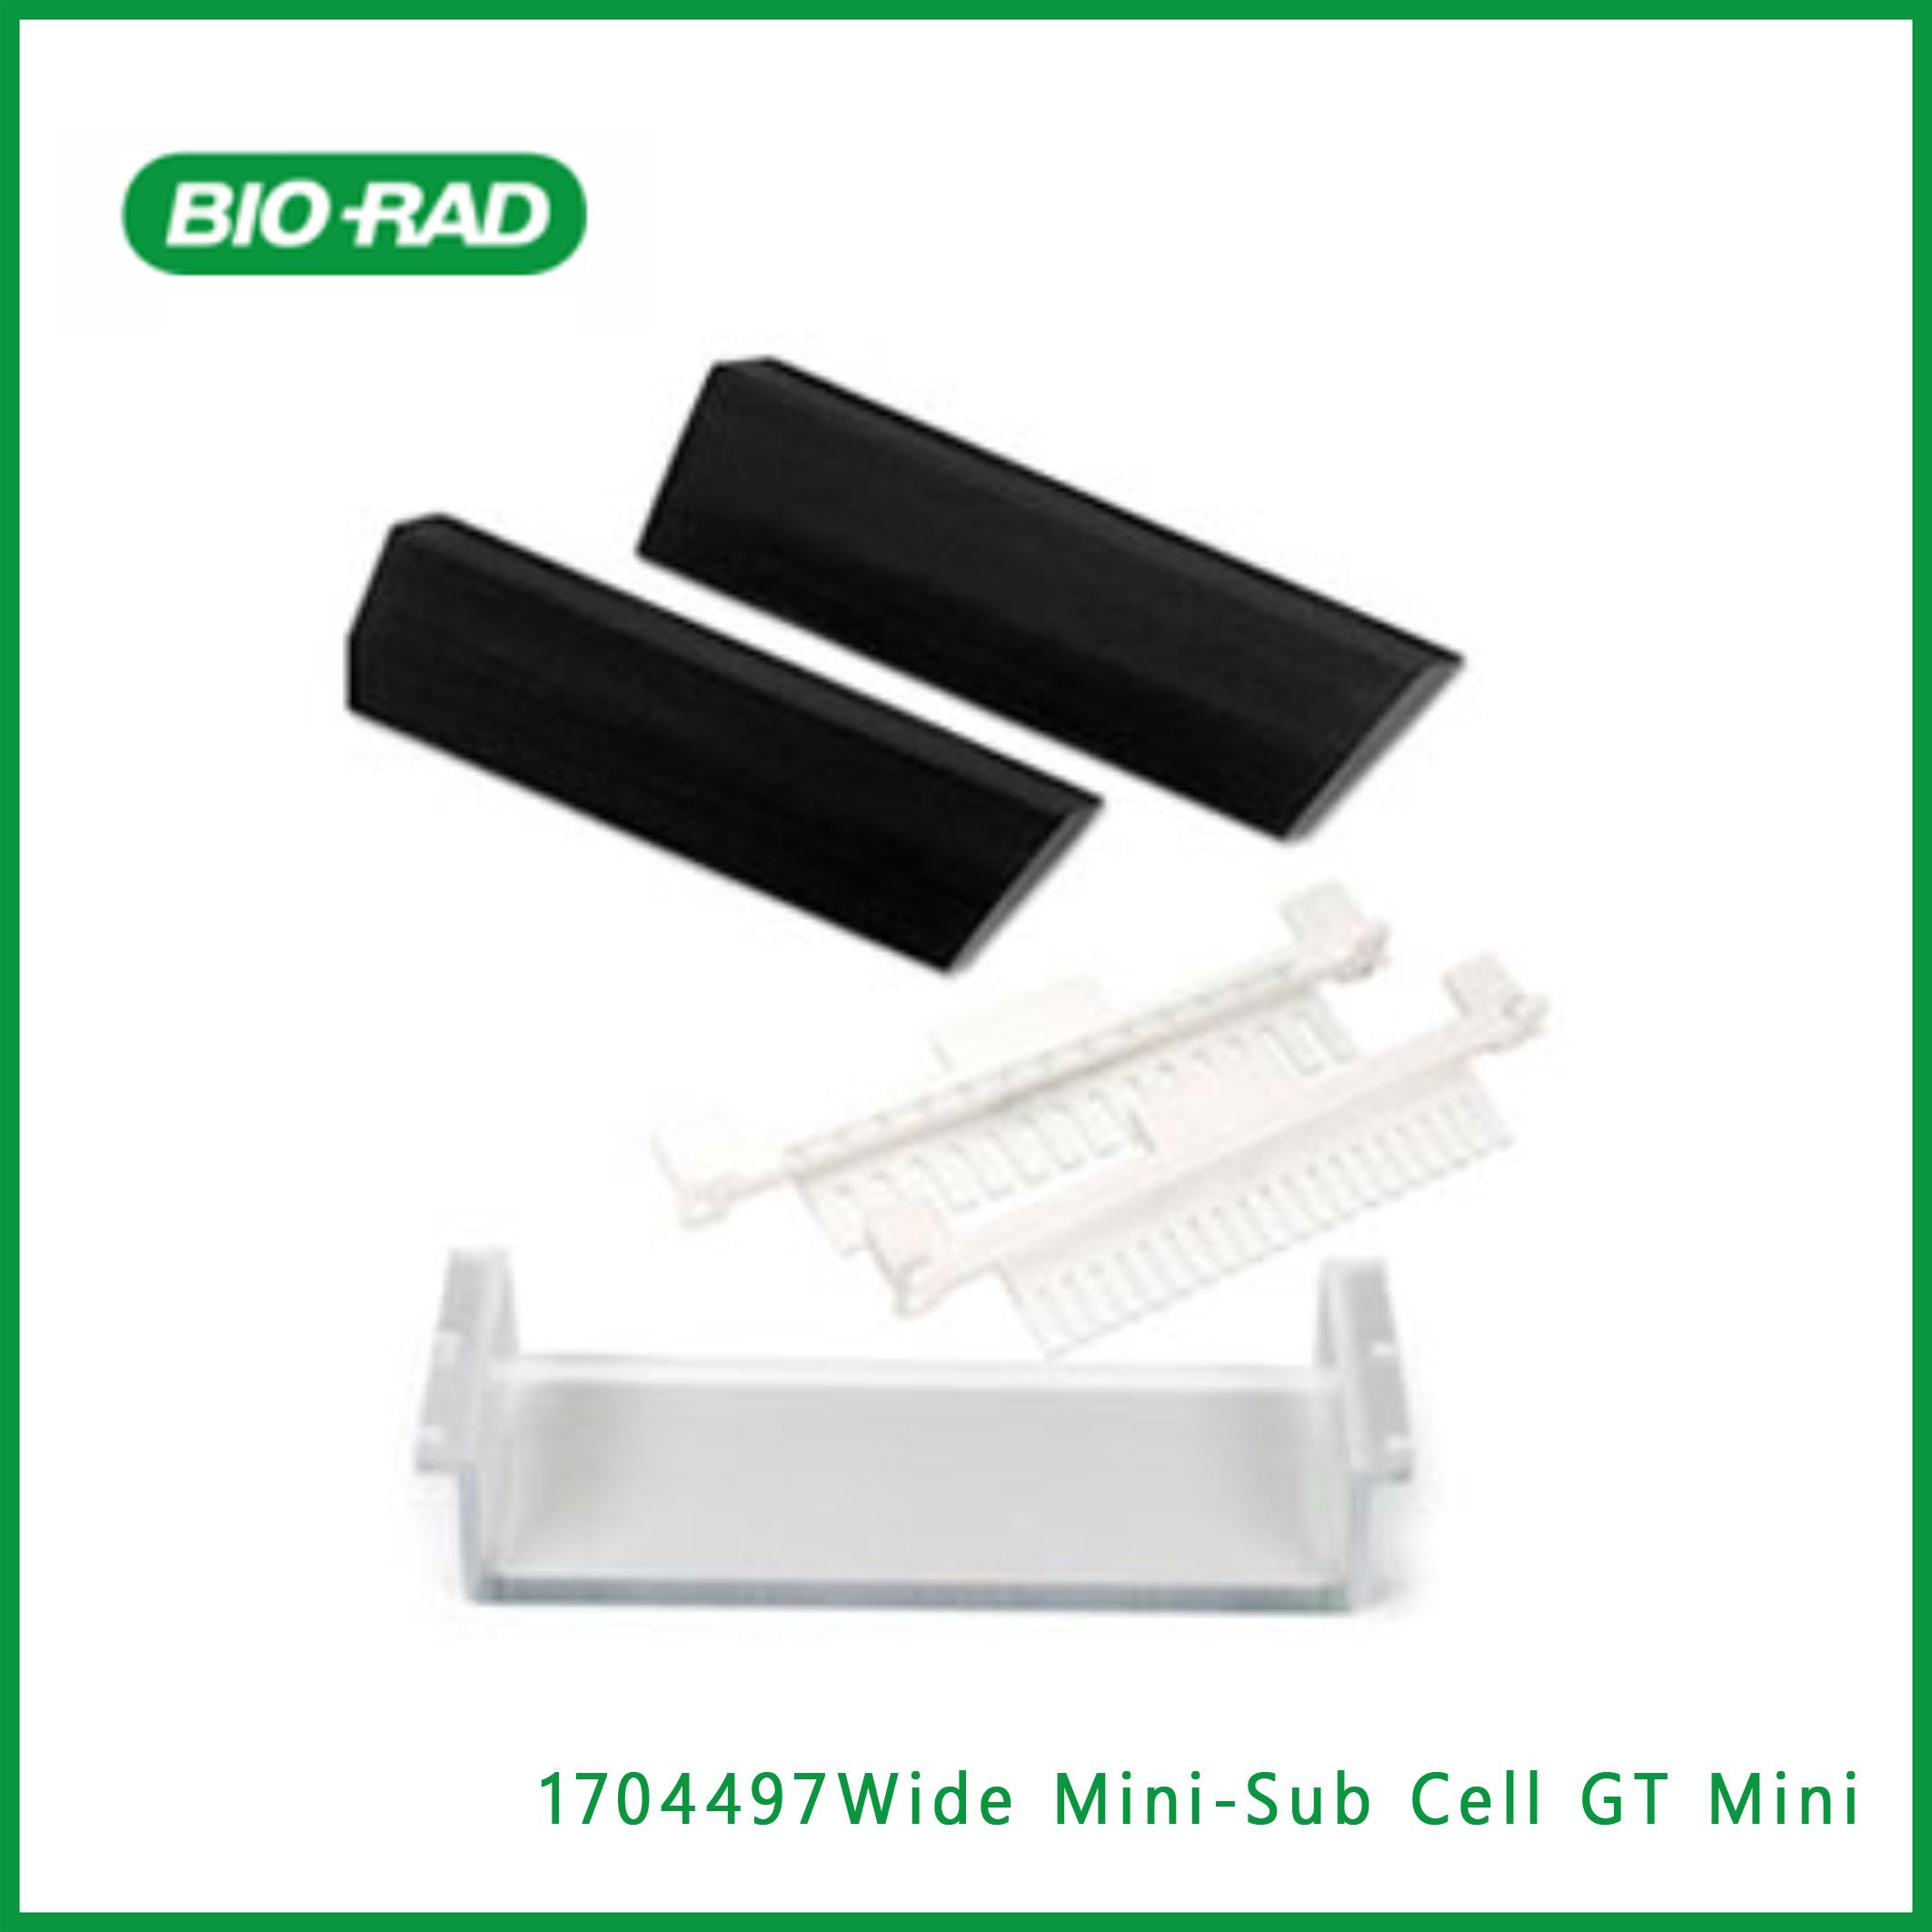 伯乐Bio-Rad1704497Wide Mini-Sub Cell GT Mini Handcasting Kit, ​​​​​​​宽迷你子细胞燃气轮机迷你手摇套件，现货